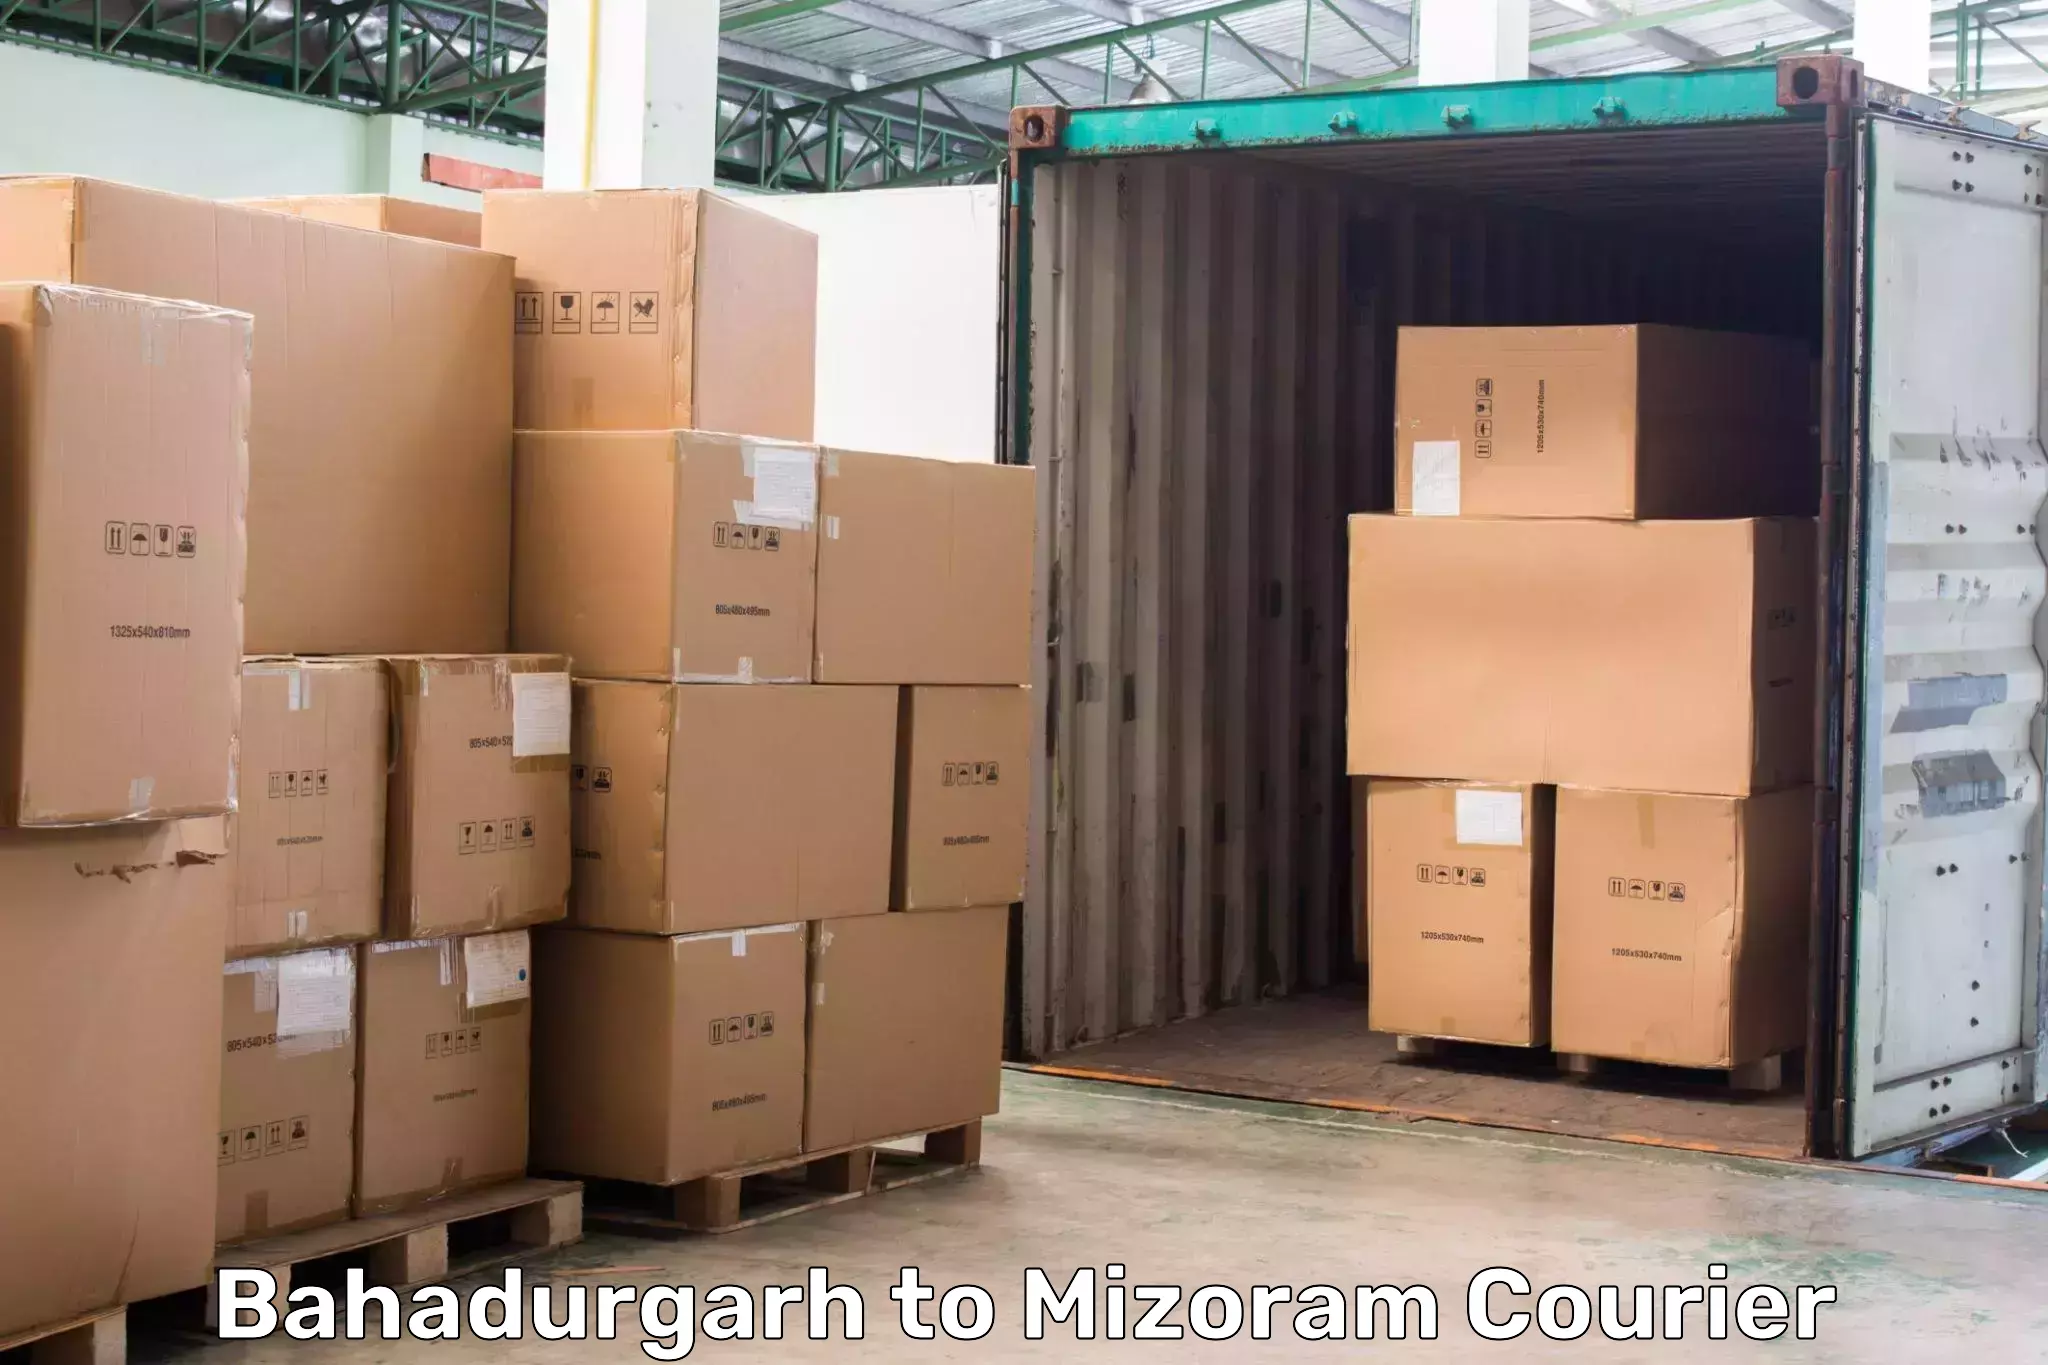 Expedited shipping methods Bahadurgarh to Kolasib